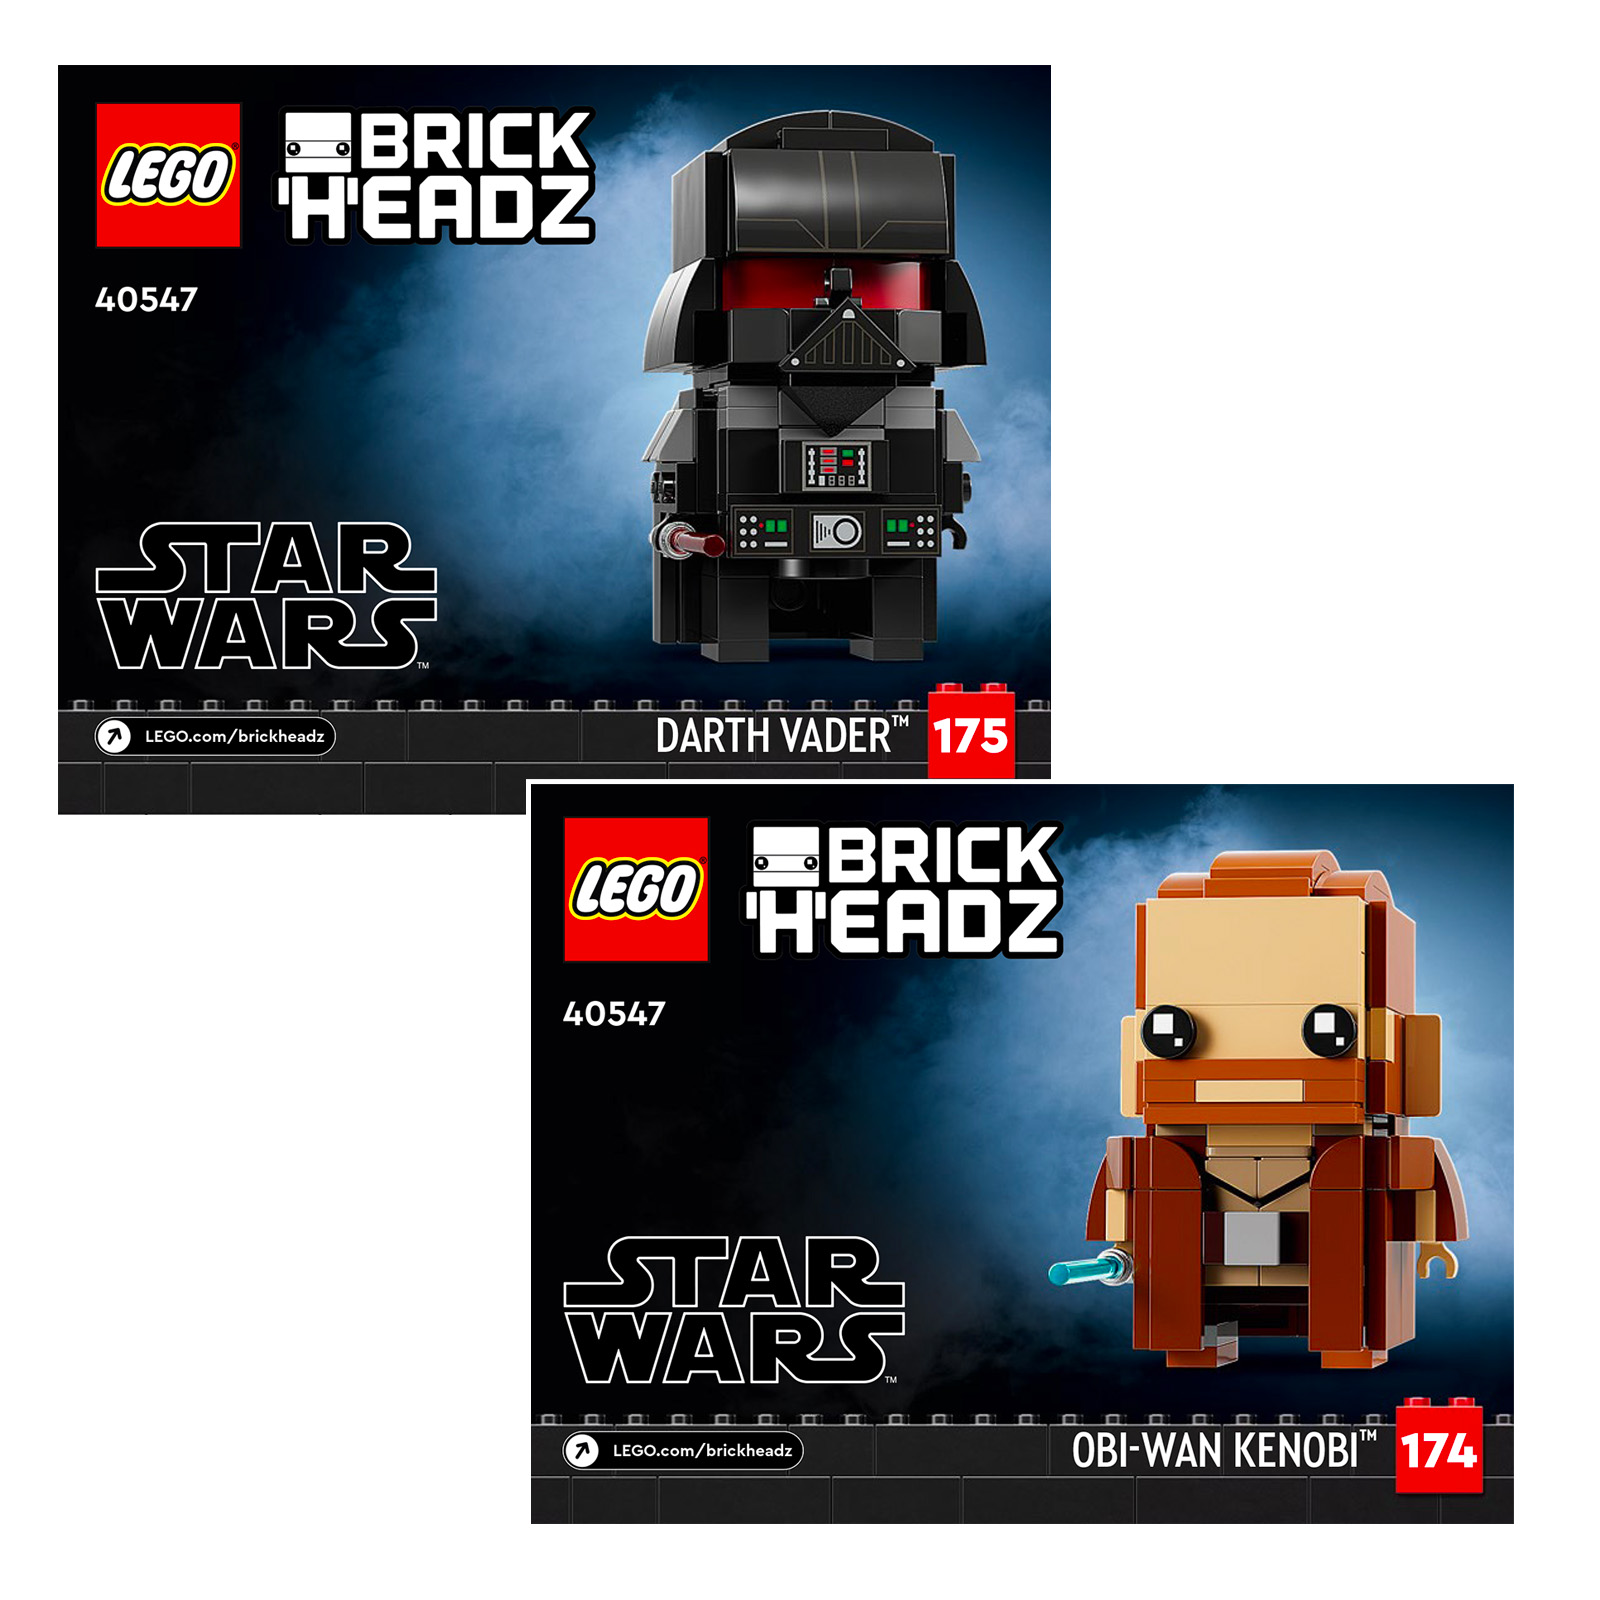 LEGO Star Wars BrickHeadz 40547 Obi-Wan Kenobi i Darth Vader: Pierwsze wizualizacje